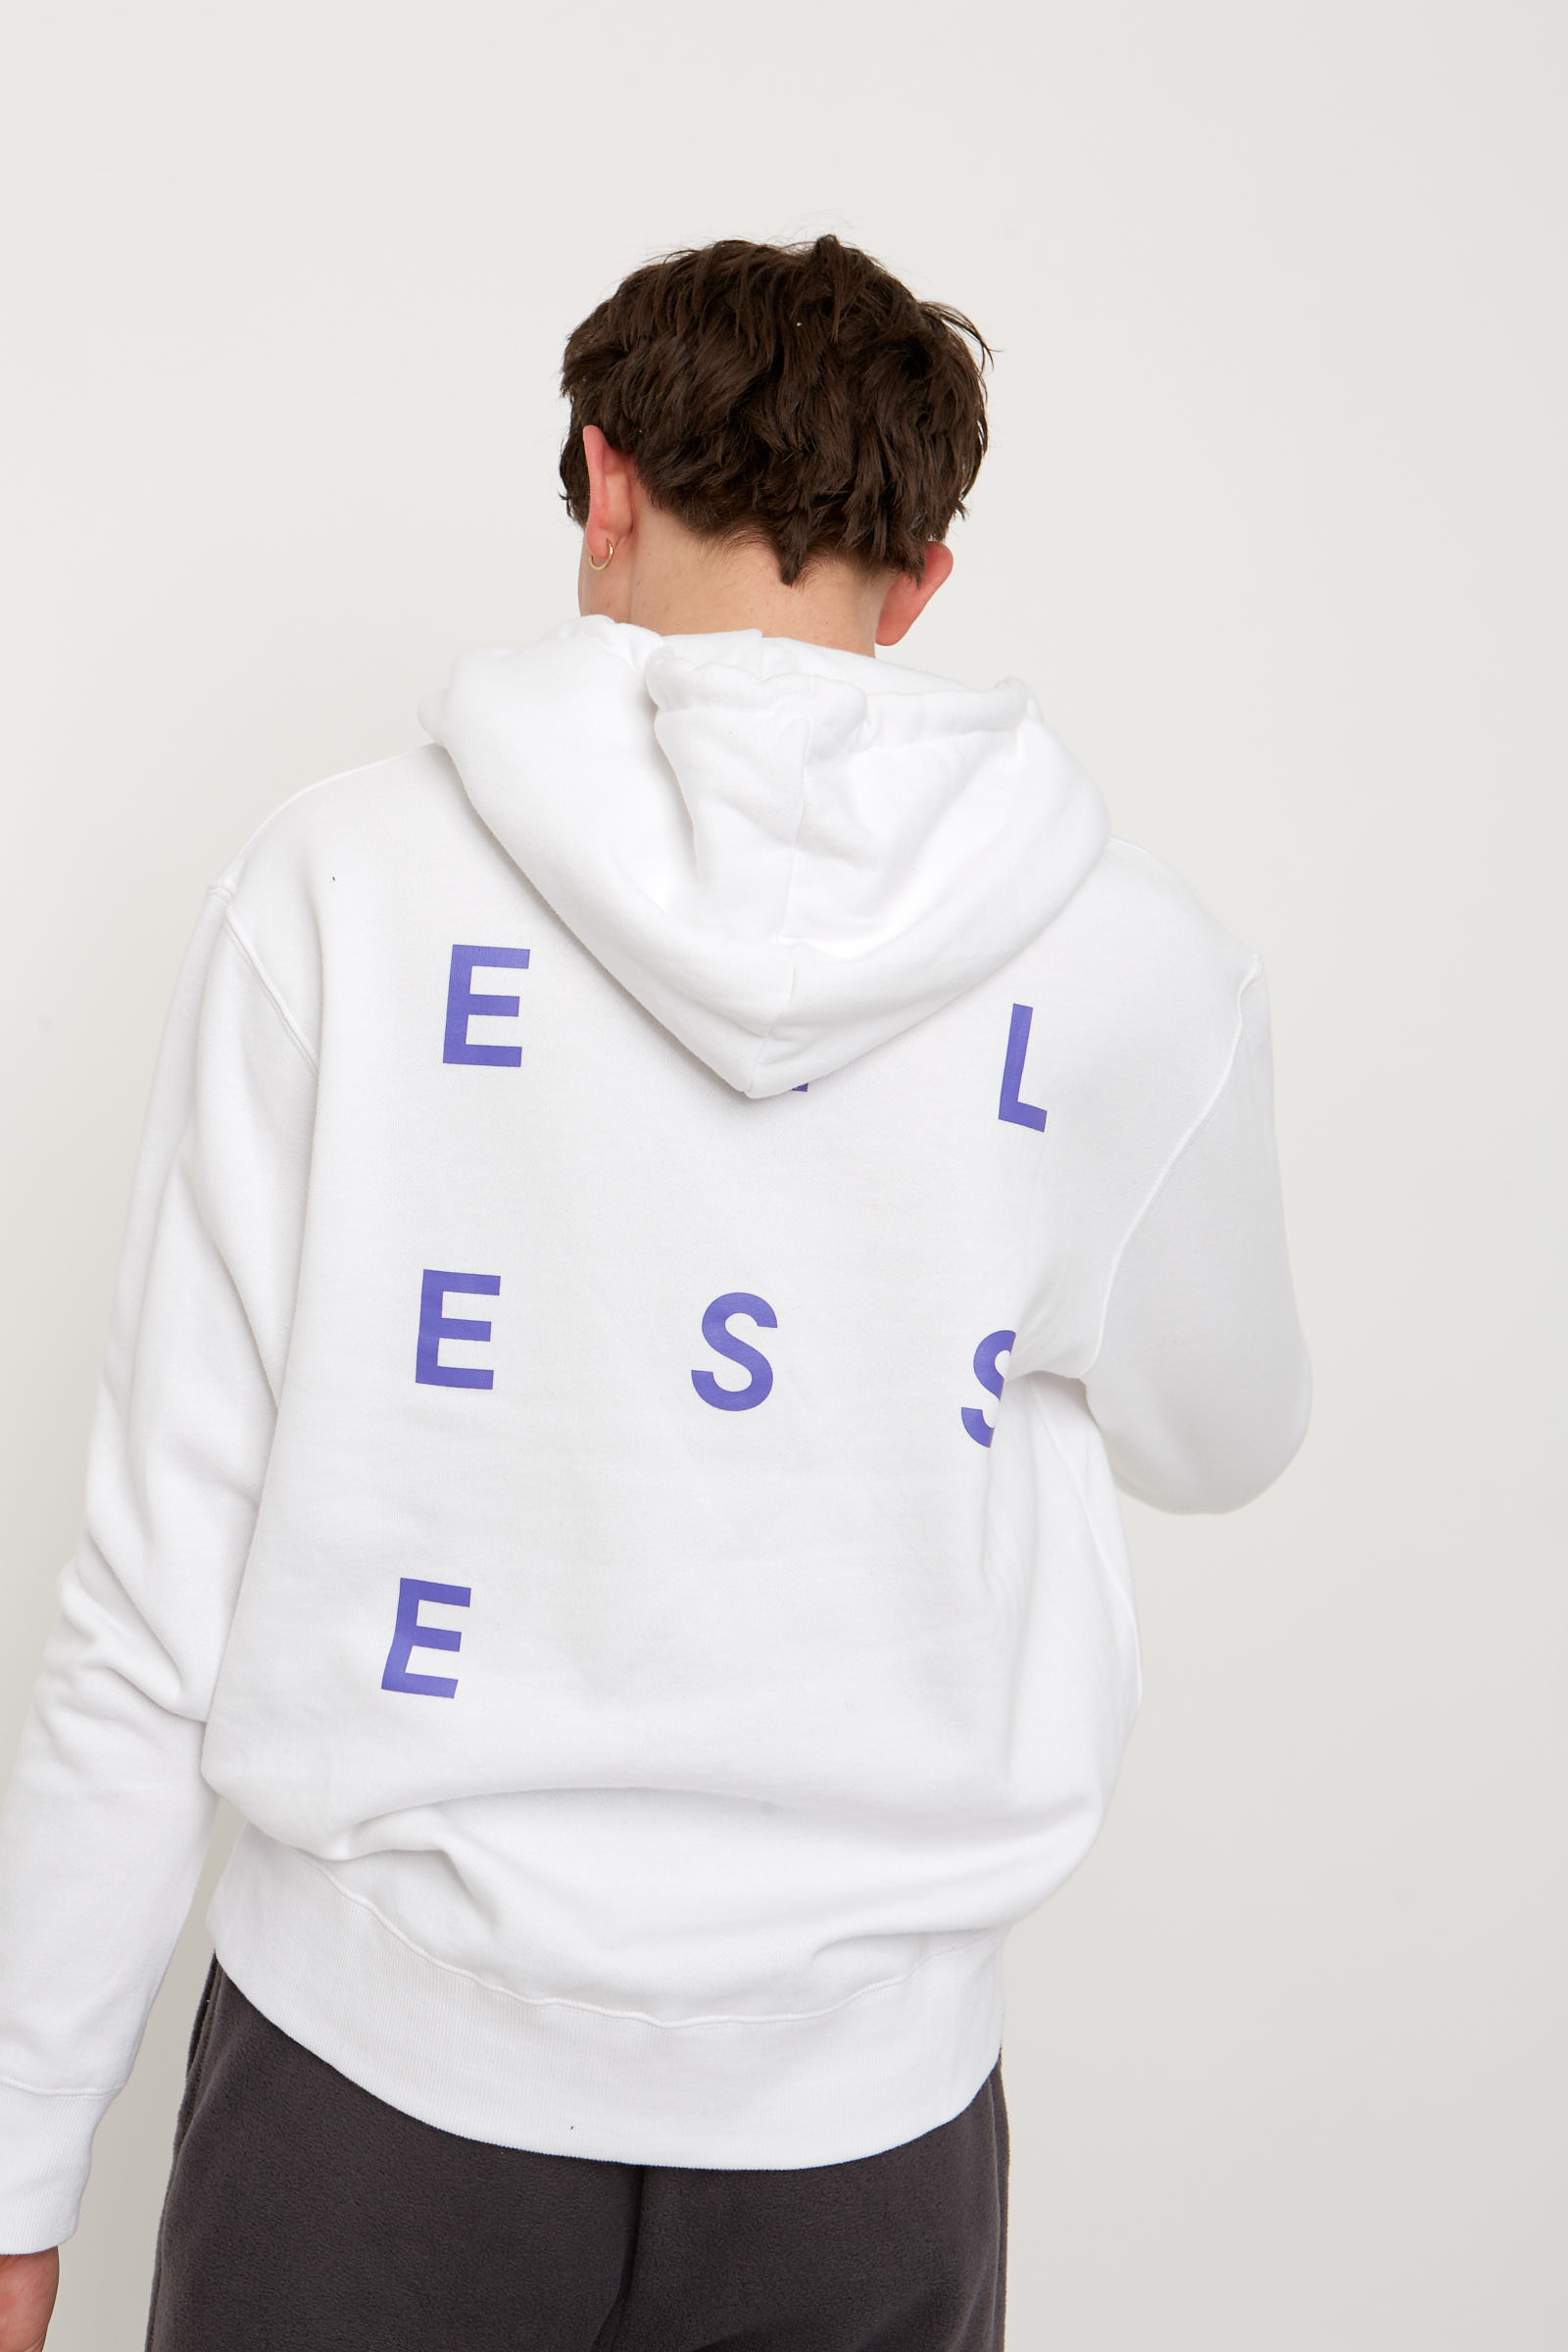 white ellesse hoodie